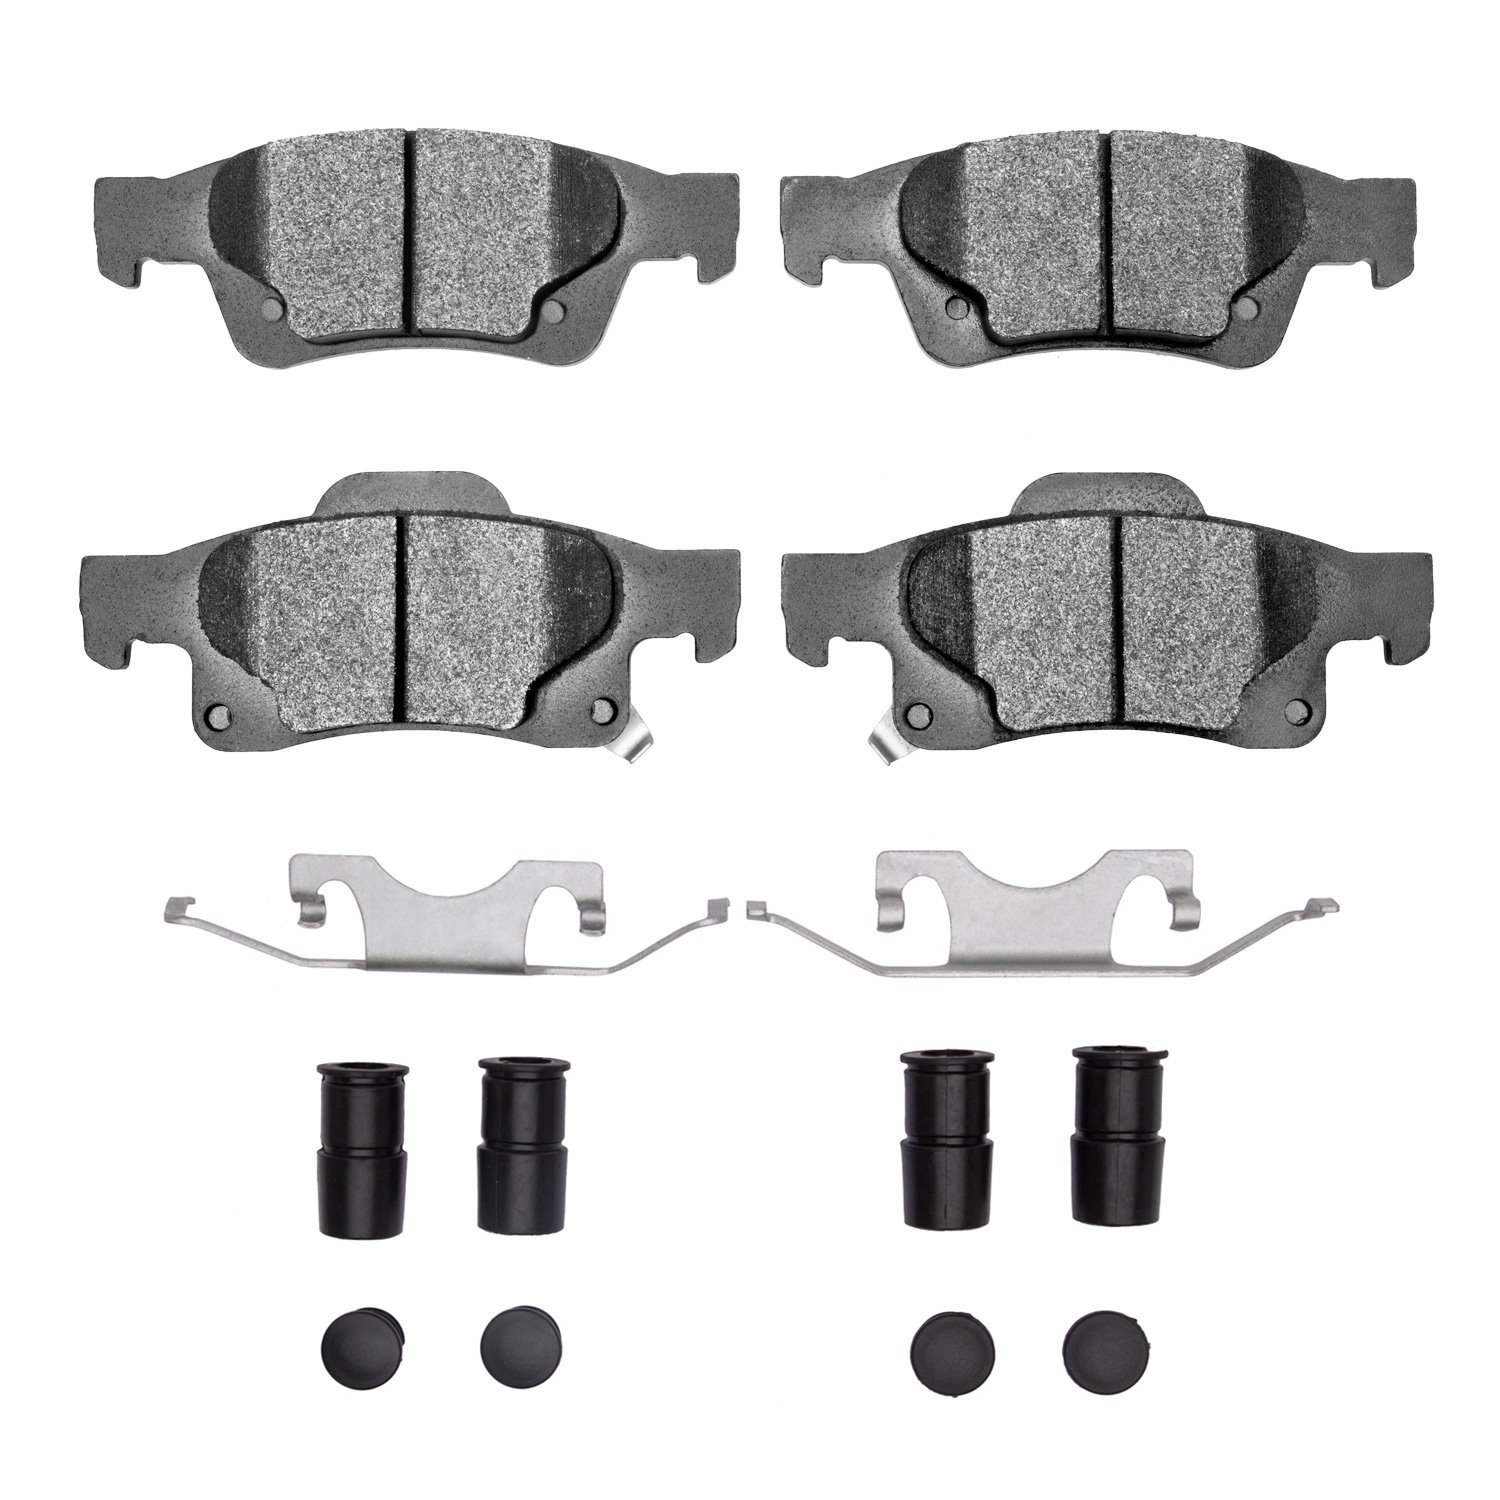 1214-1498-01 Heavy-Duty Brake Pads & Hardware Kit, Fits Select Mopar, Position: Rear